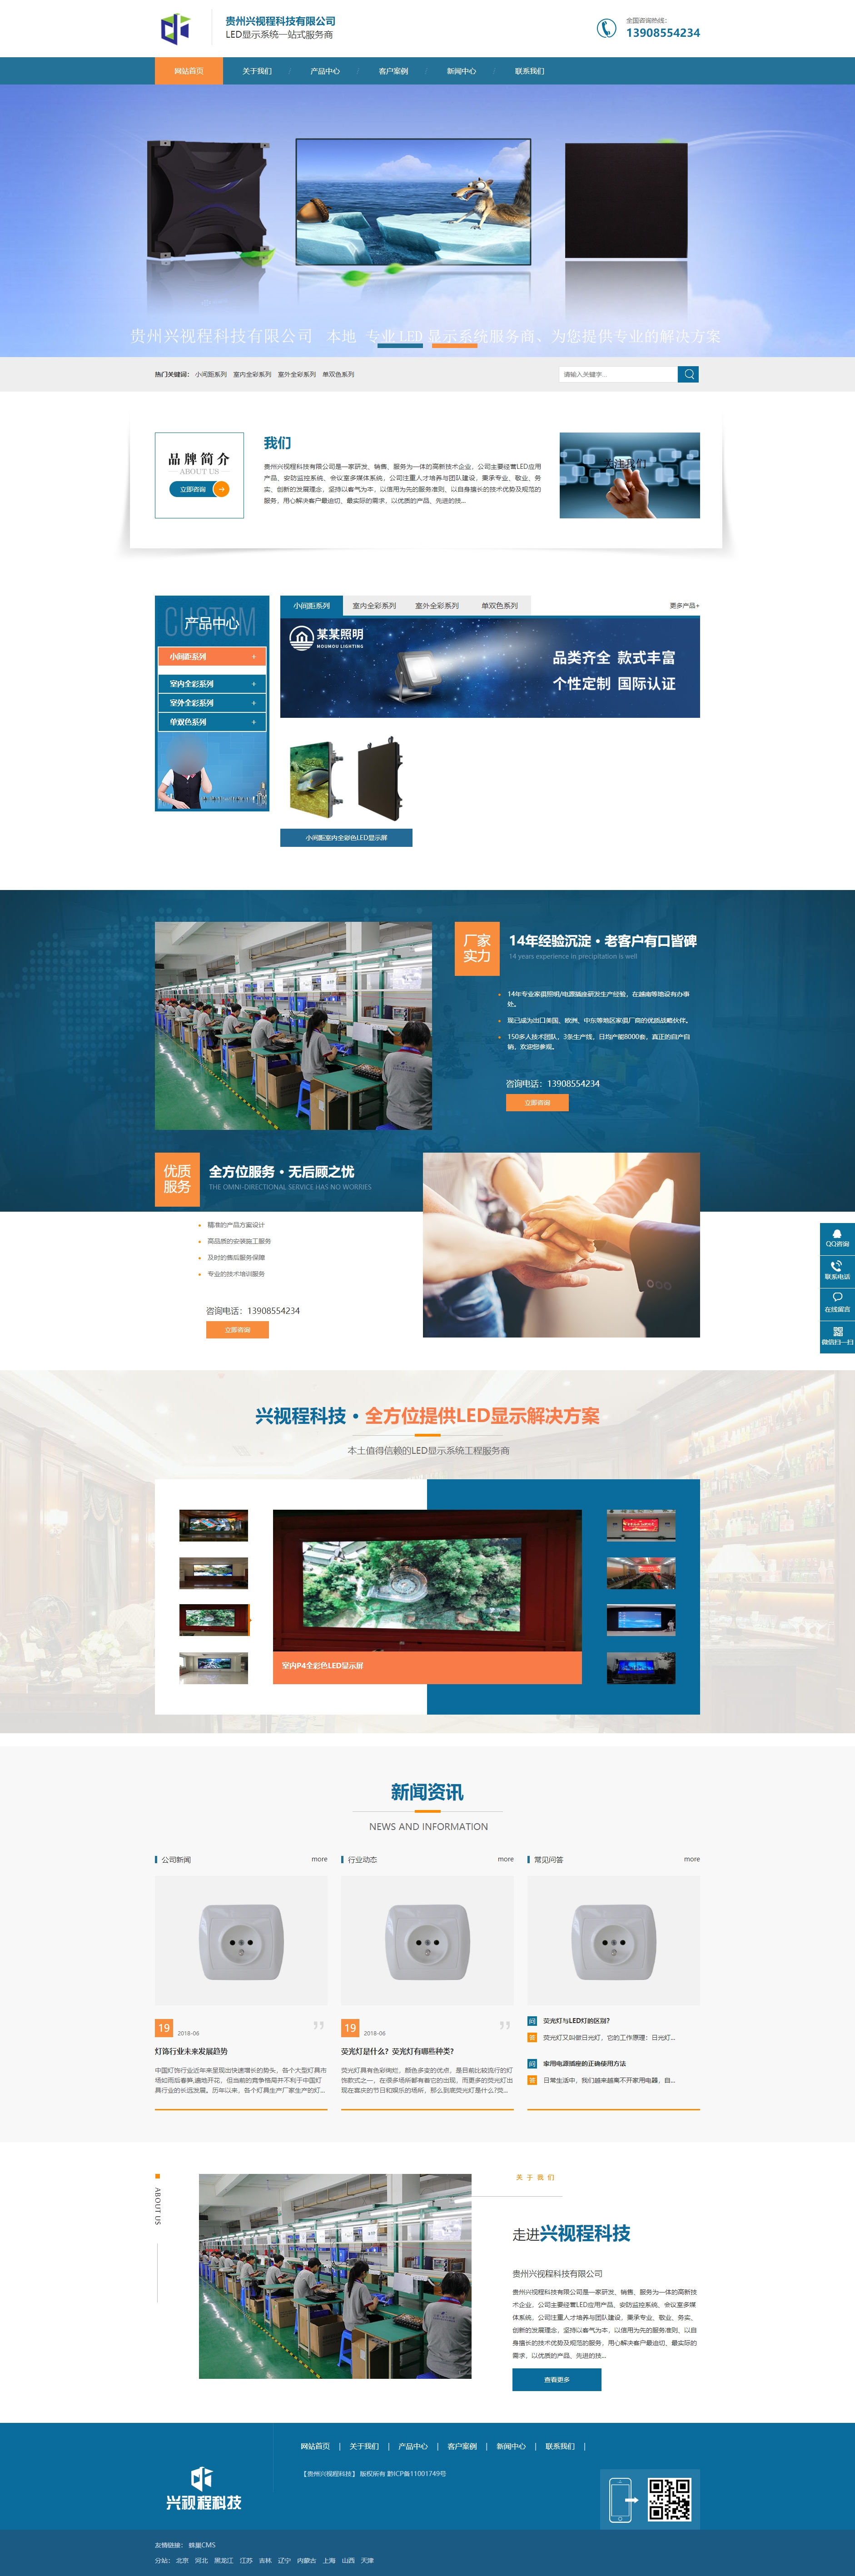 毕节贵州兴视程科技有限公司 网站正式上线